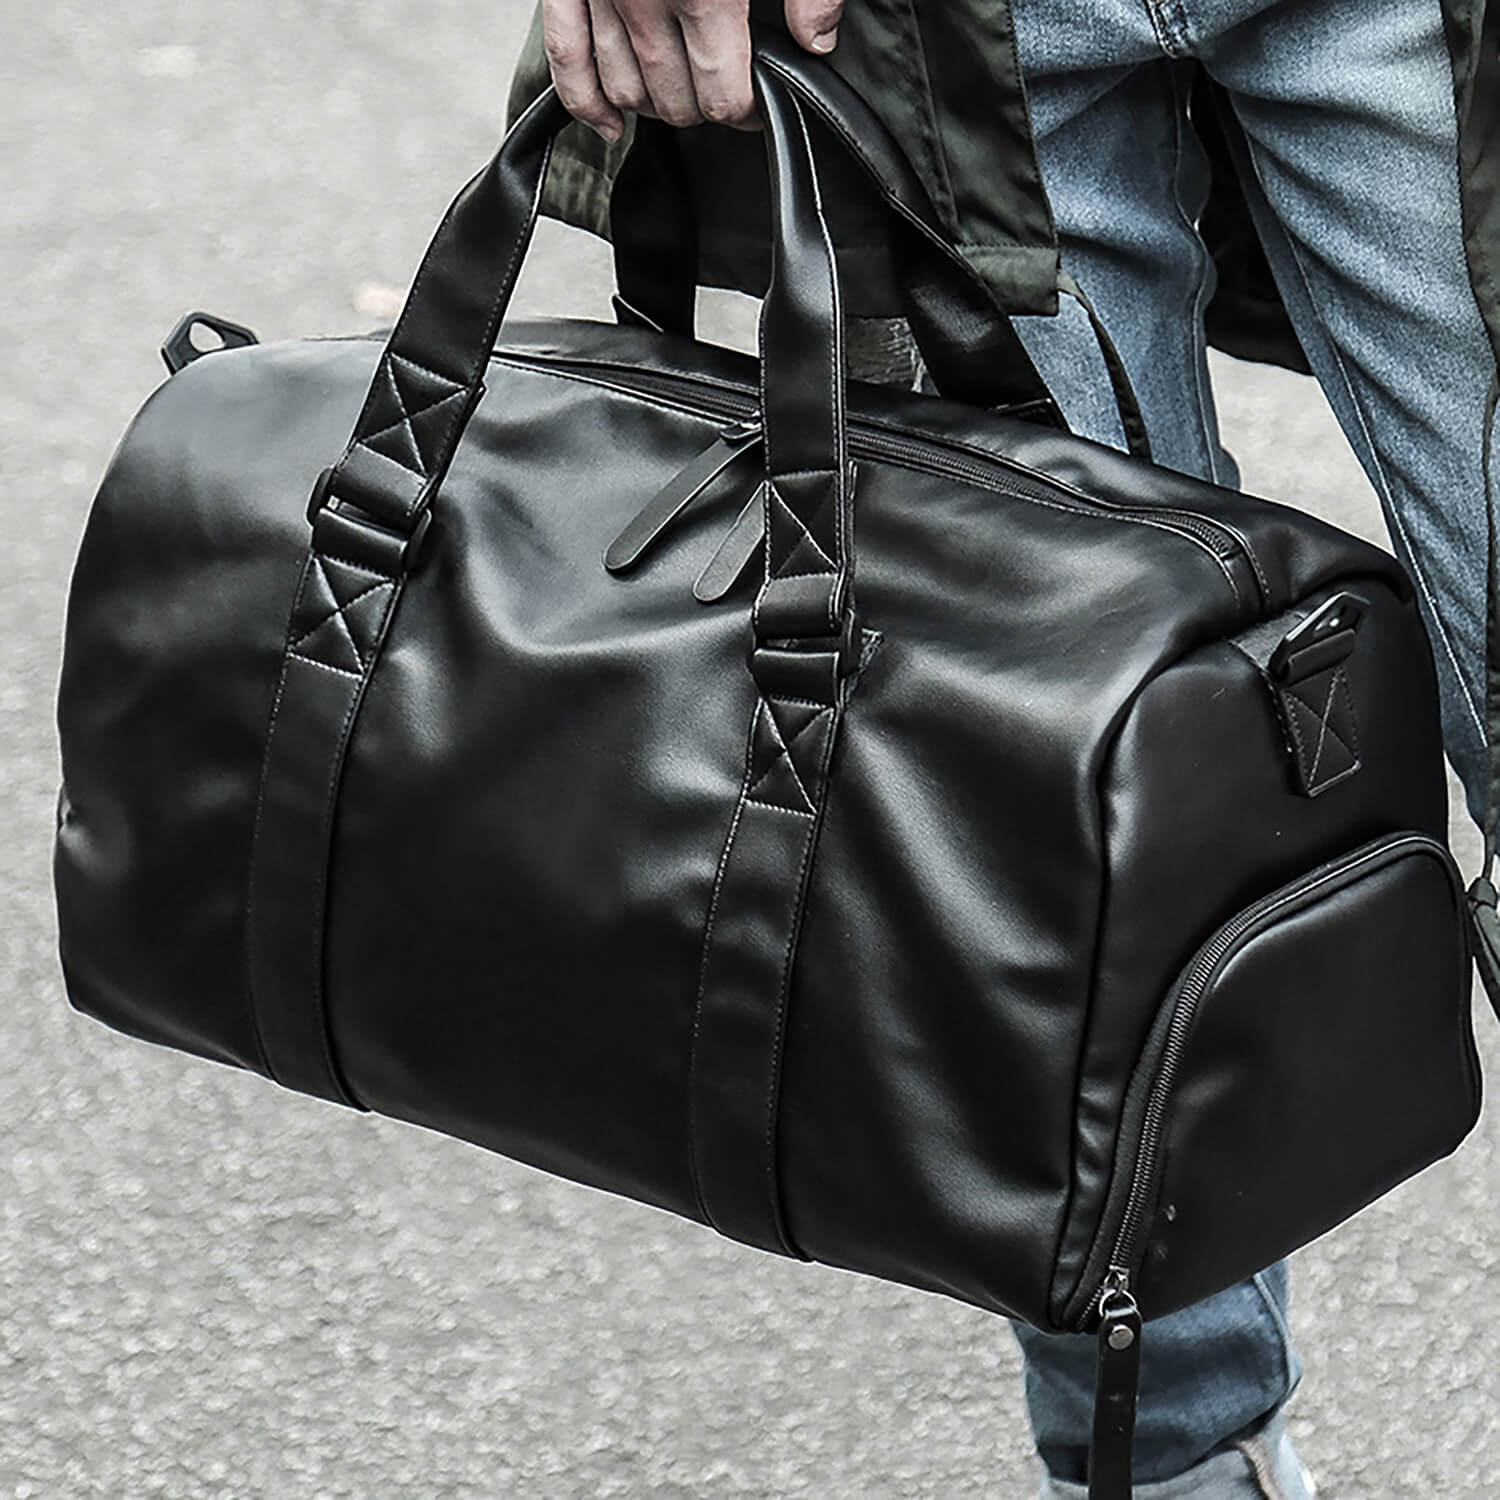 Stylish  Sports Travel Leather Duffle Bag